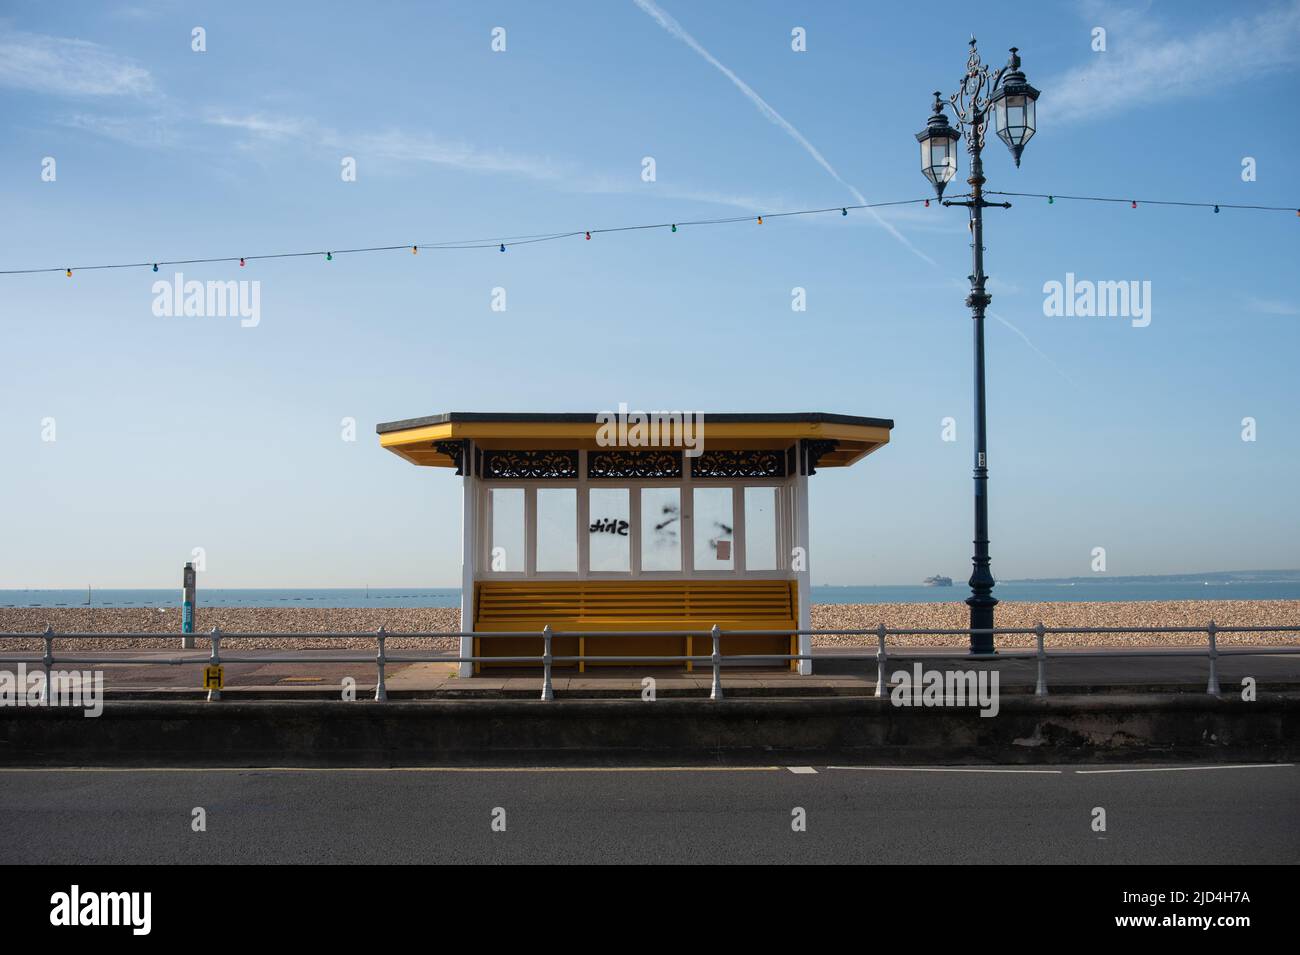 Un abri de vent isolé et un poste de lampe sur la promenade de Portsmouth, en Angleterre. Pas de gens et de l'île de Wight au loin. Banque D'Images